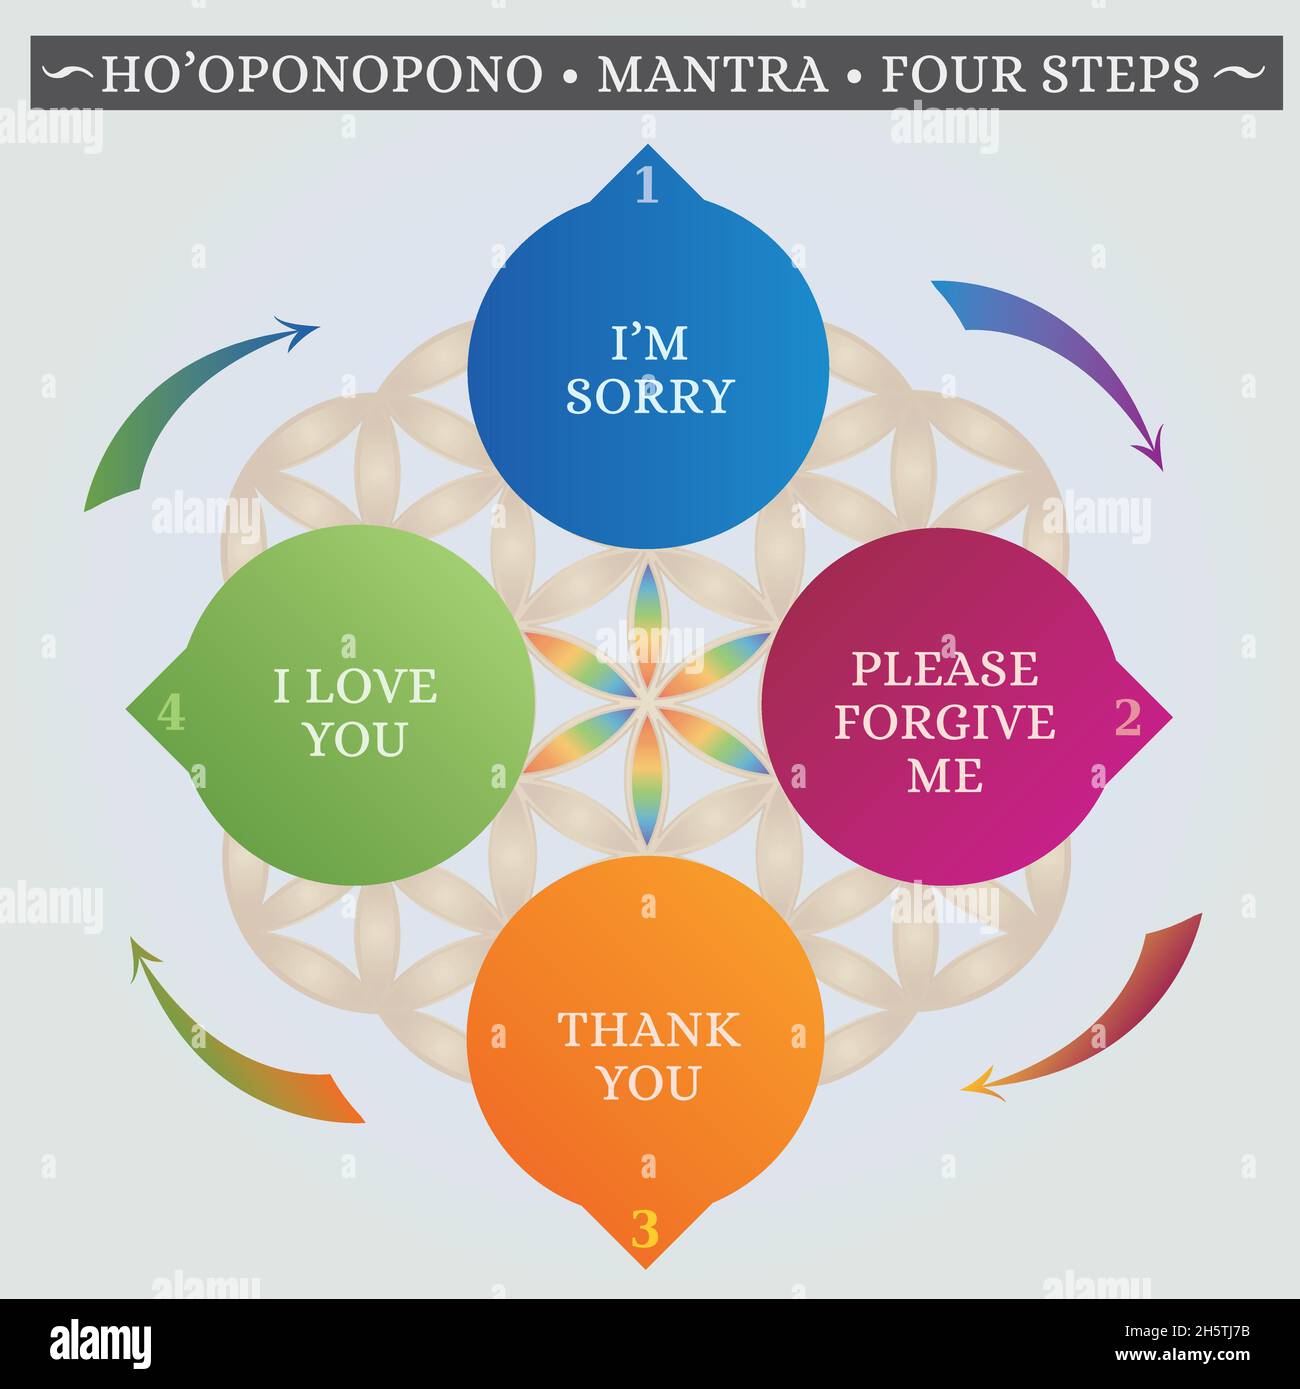 Ho'oponopono Hawaiianische Praxis, Gebet, Mantra, Illustration, Worte in 4 Schritten, Grundfarben auf dem Hintergrund der Blume des Lebens Stock Vektor